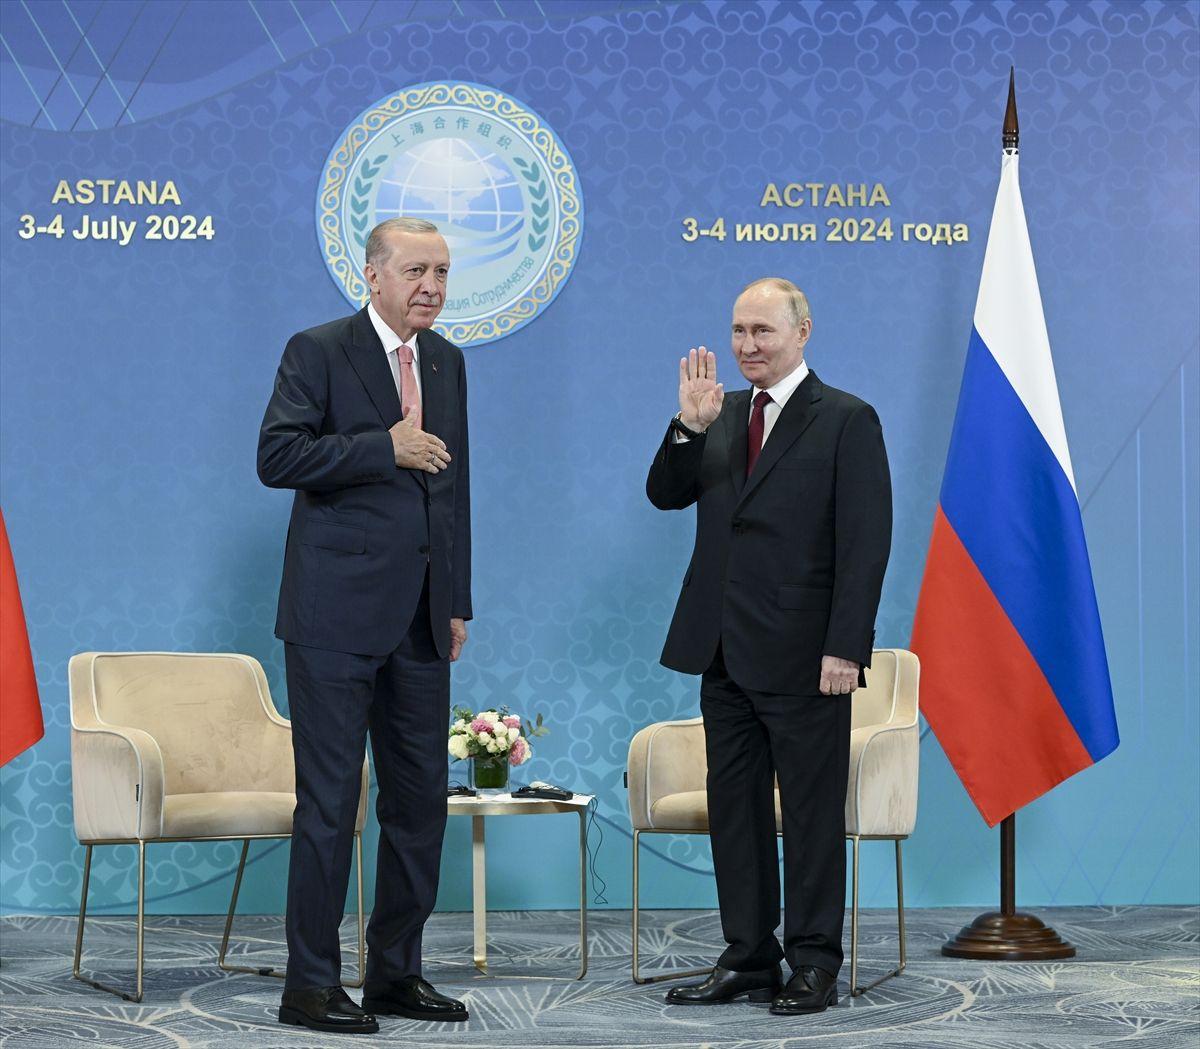 Cumhurbaşkanı Erdoğan ve Vladimir Putin bir arada! "Akkuyu'yu bir an önce devreye almak istiyoruz"